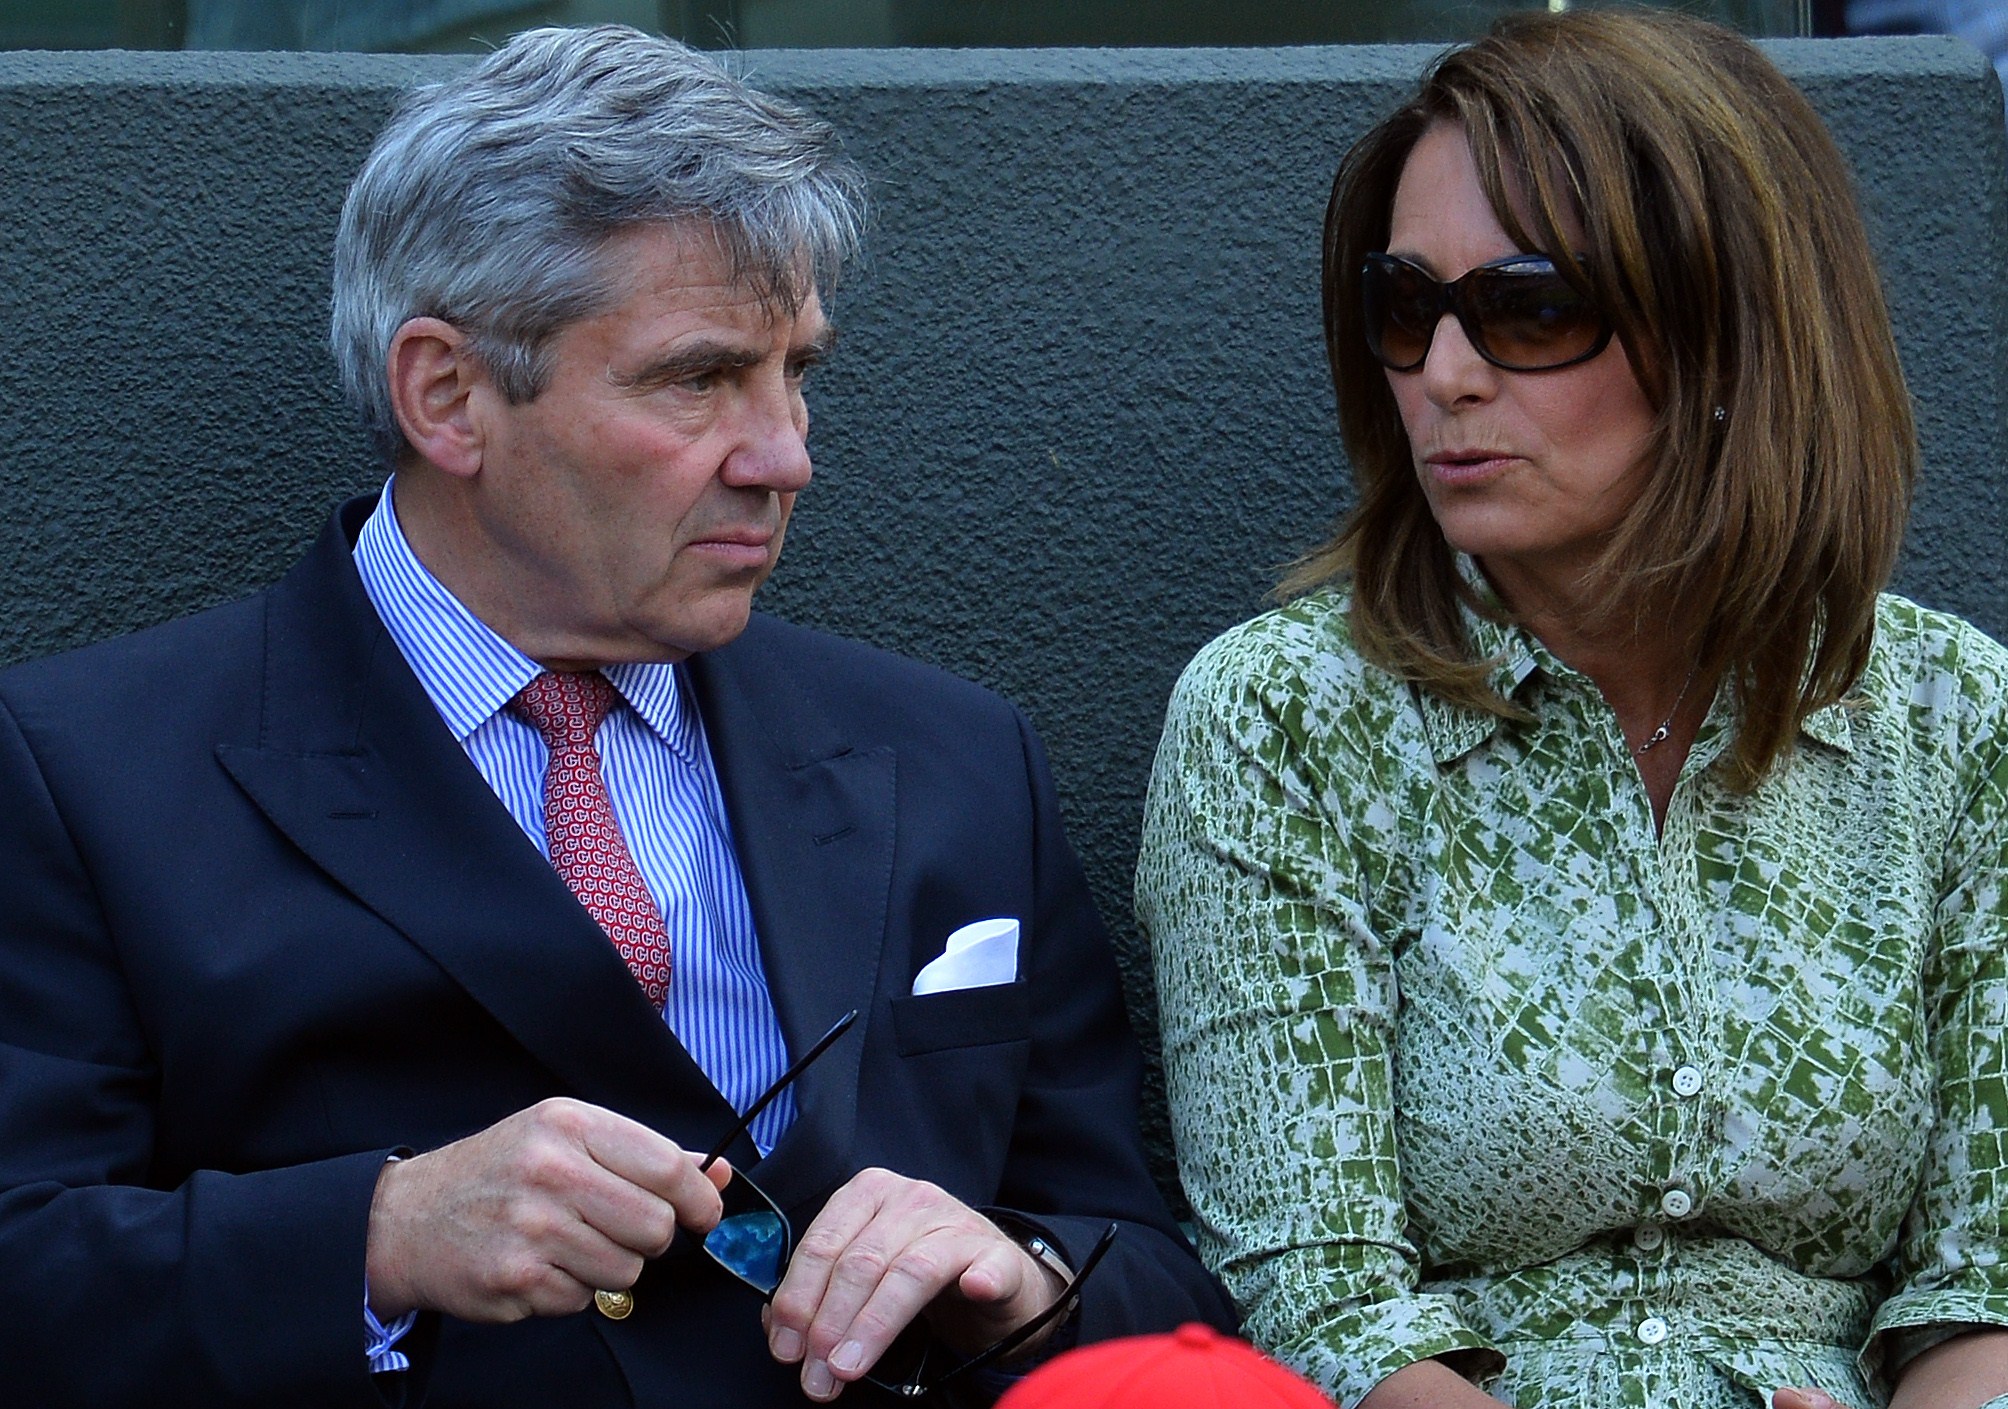 Michael y Carole Middleton en el Campeonato de Wimbledon en Londres en 2015 | Fuente: Getty Images